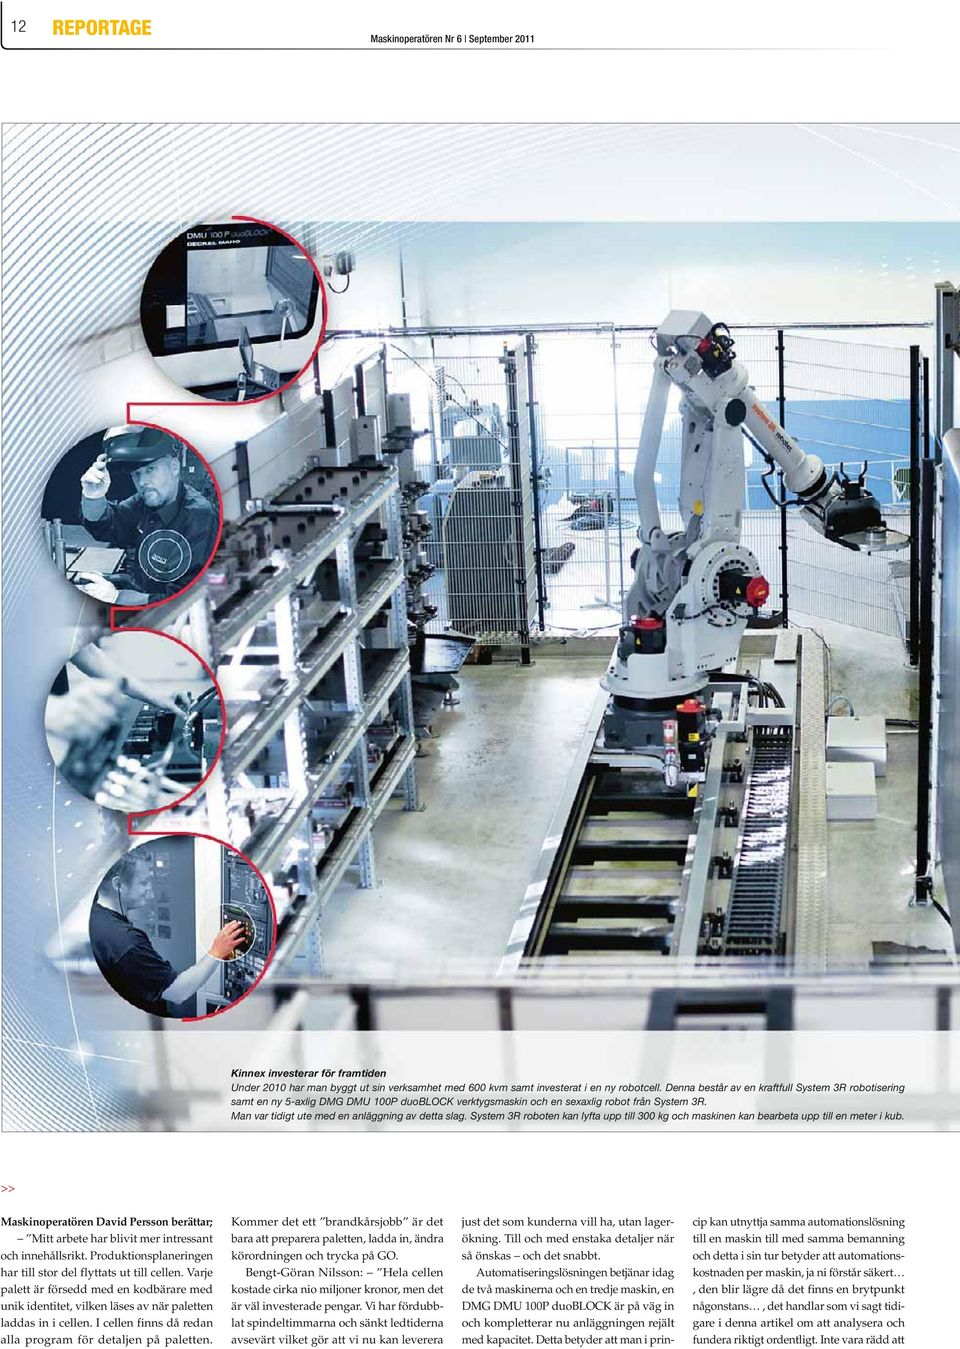 System 3R roboten kan lyfta upp till 300 kg och maskinen kan bearbeta upp till en meter i kub. >> Maskinoperatören David Persson berättar; Mitt arbete har blivit mer intressant och innehållsrikt.